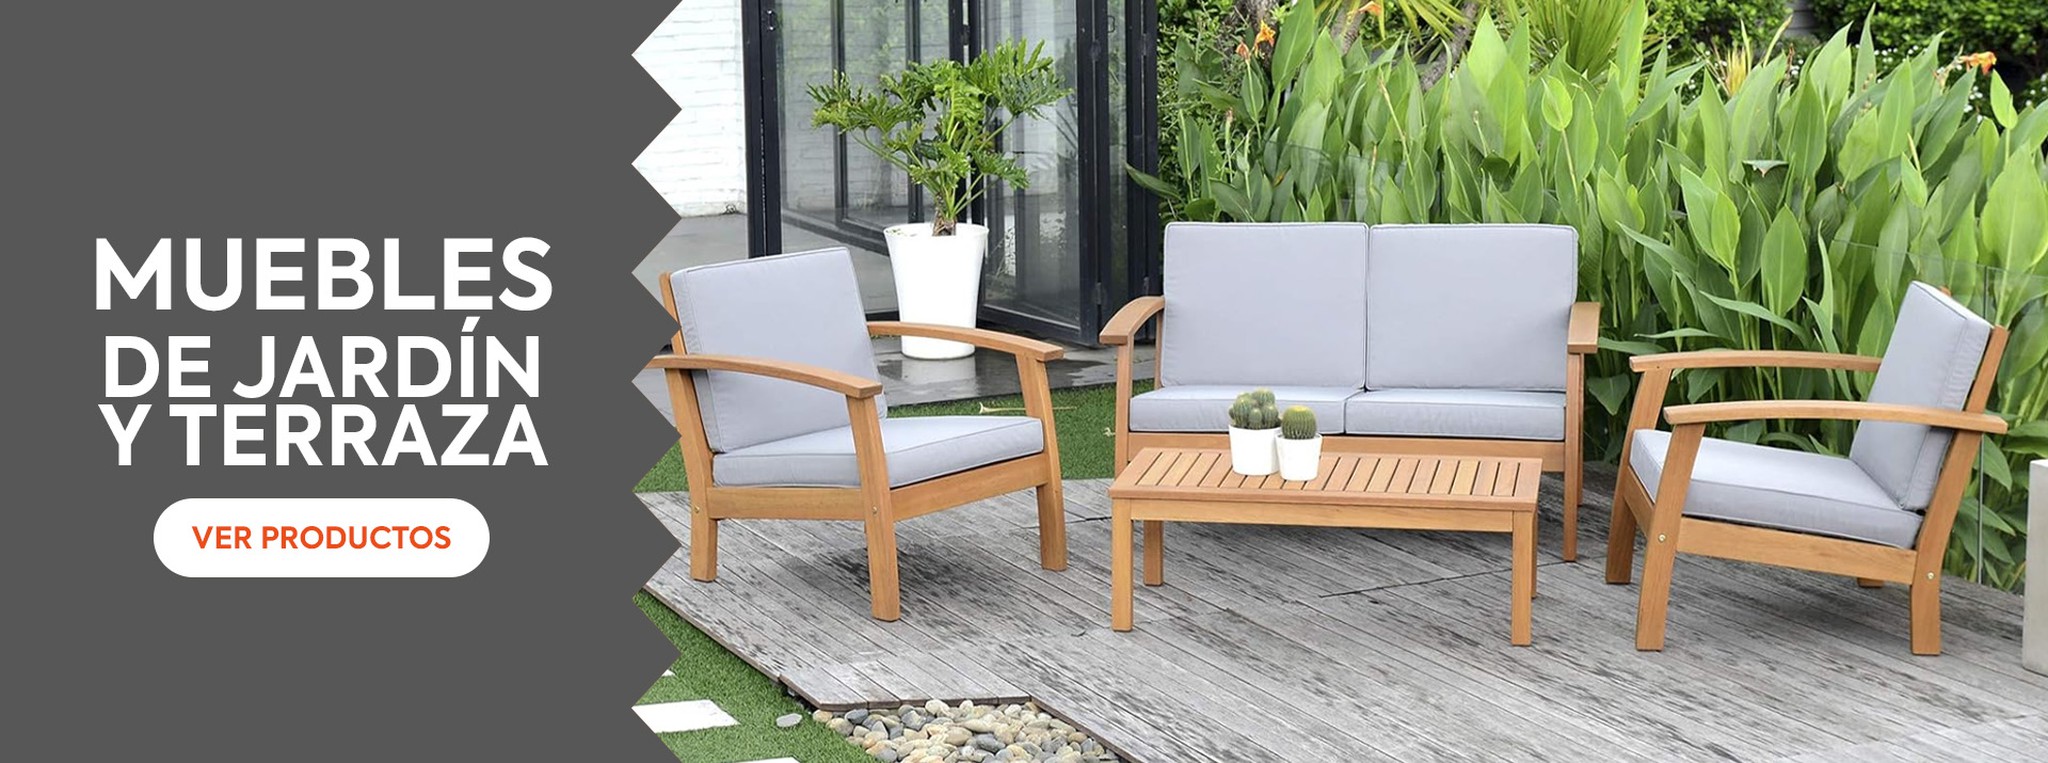 Descubre nuestra colección de mobiliario de jardín para disfrutar de tu hogar este verano